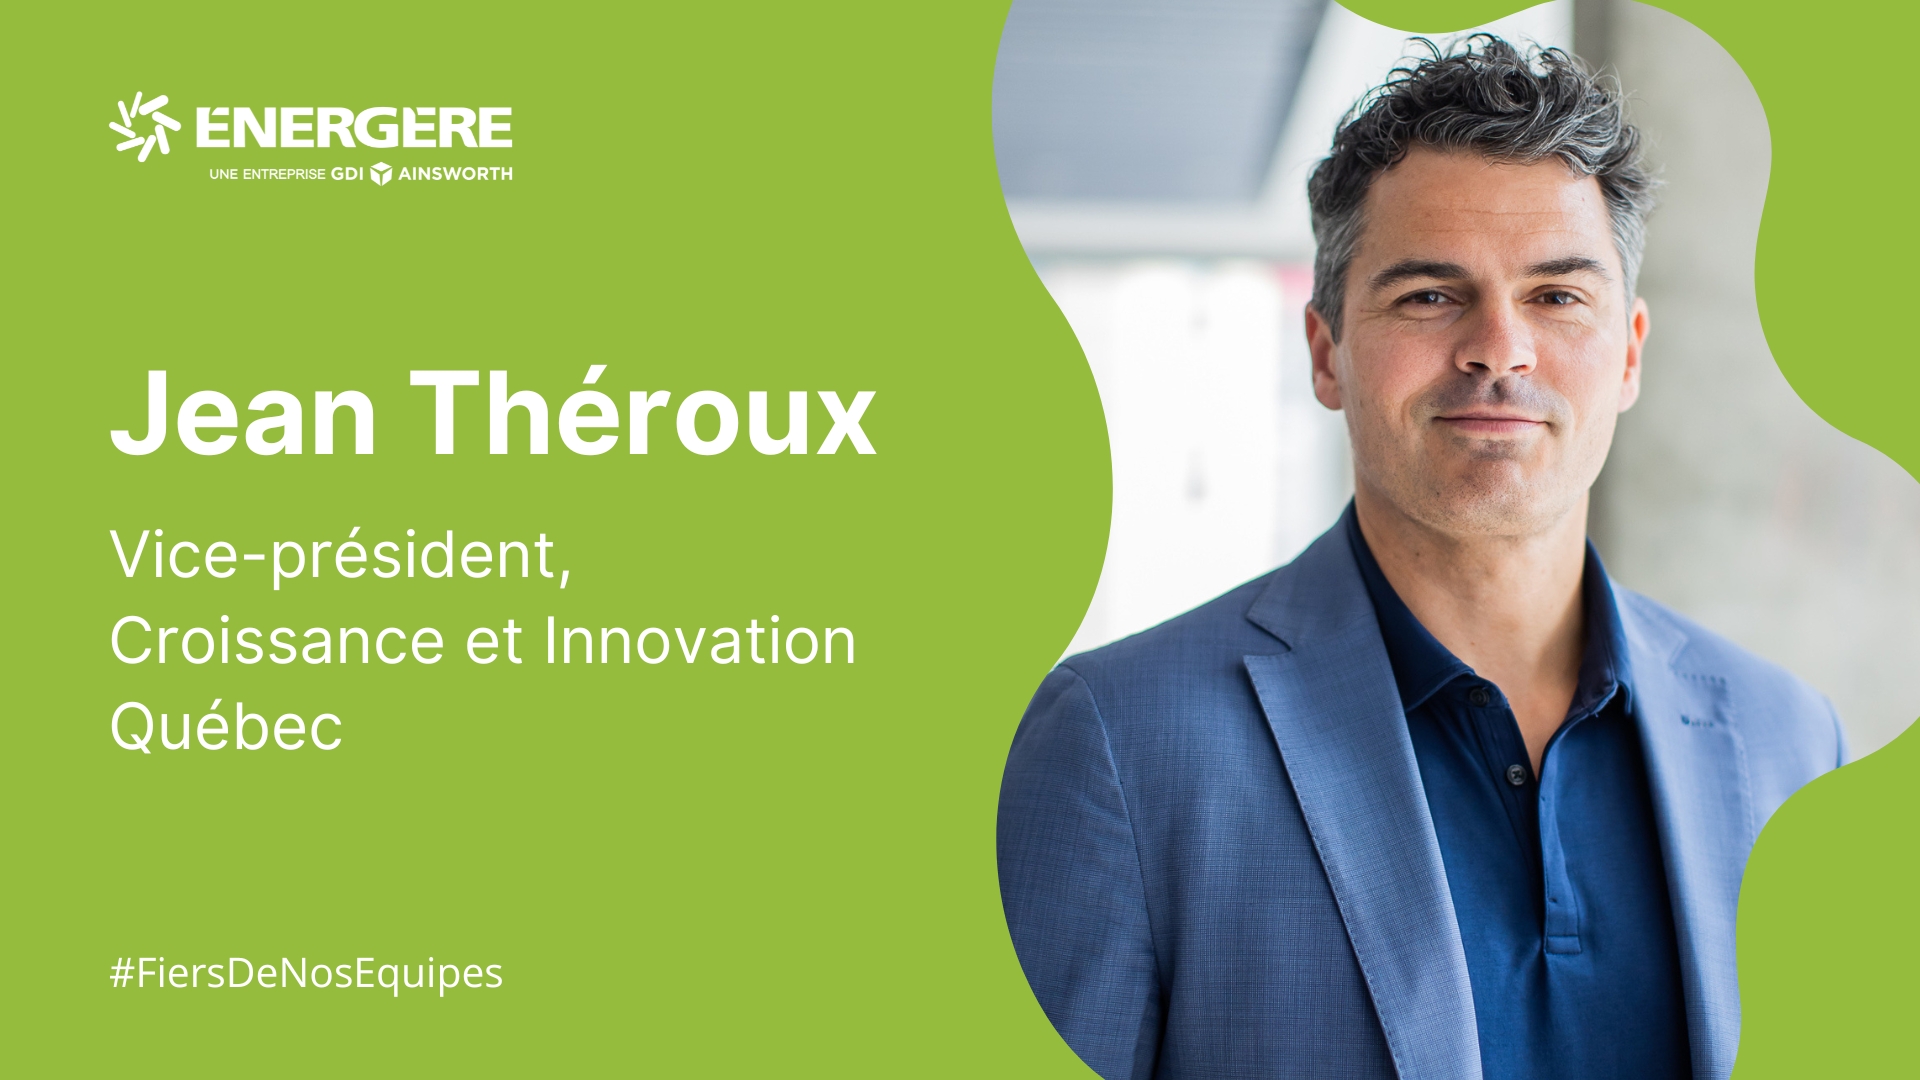 Nomination de Jean Théroux au poste de Vice-président, Croissance et Innovation pour l’ensemble des activités d’Ainsworth et d’Énergère au Québec